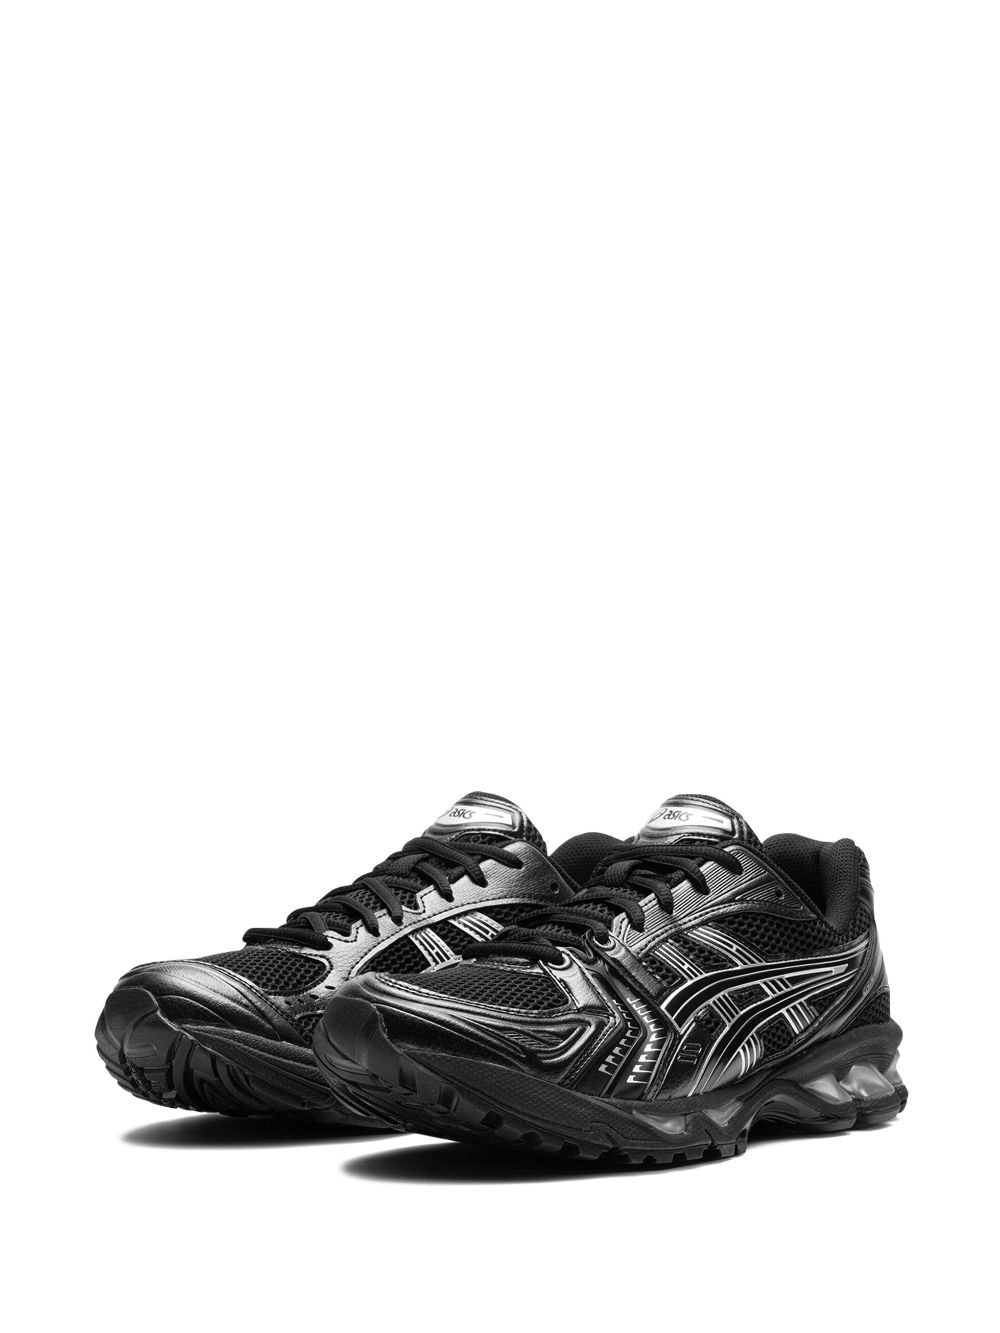 Gel-Kayano 14 "Black Pure Silver" sneakers - 3